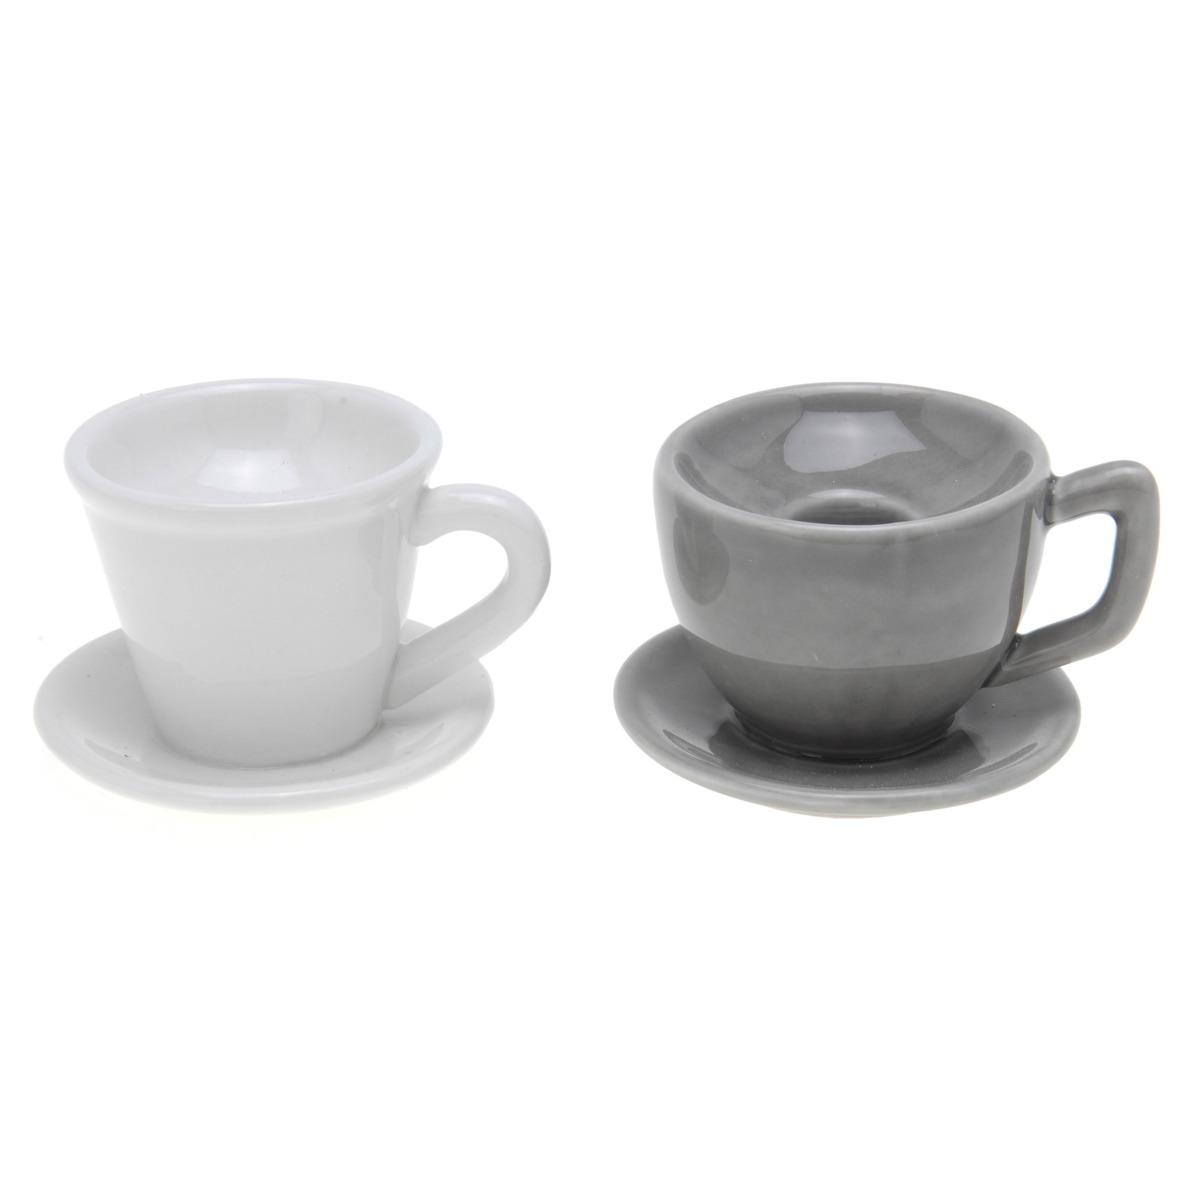 Porte-bougie tasse en porcelaine - Différents coloris